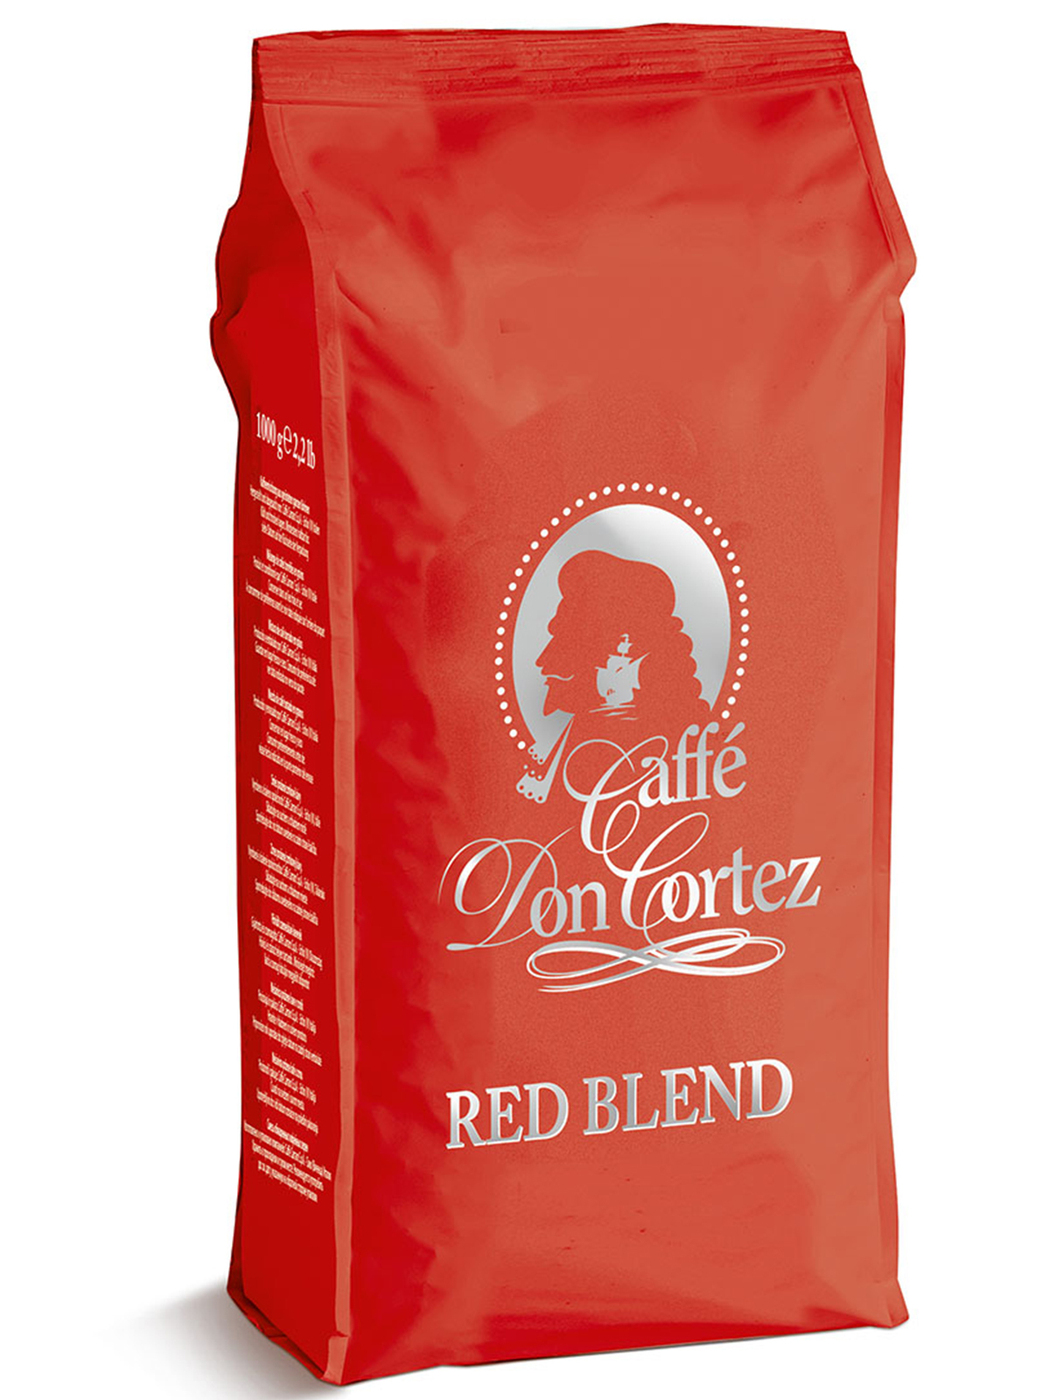 Кофе в зернах купить недорого 1 кг. Кофе в зернах Carraro Arabica. Caffe don Cortez Red Blend. Don Cortez кофе Carraro. Carraro кофе упаковка.